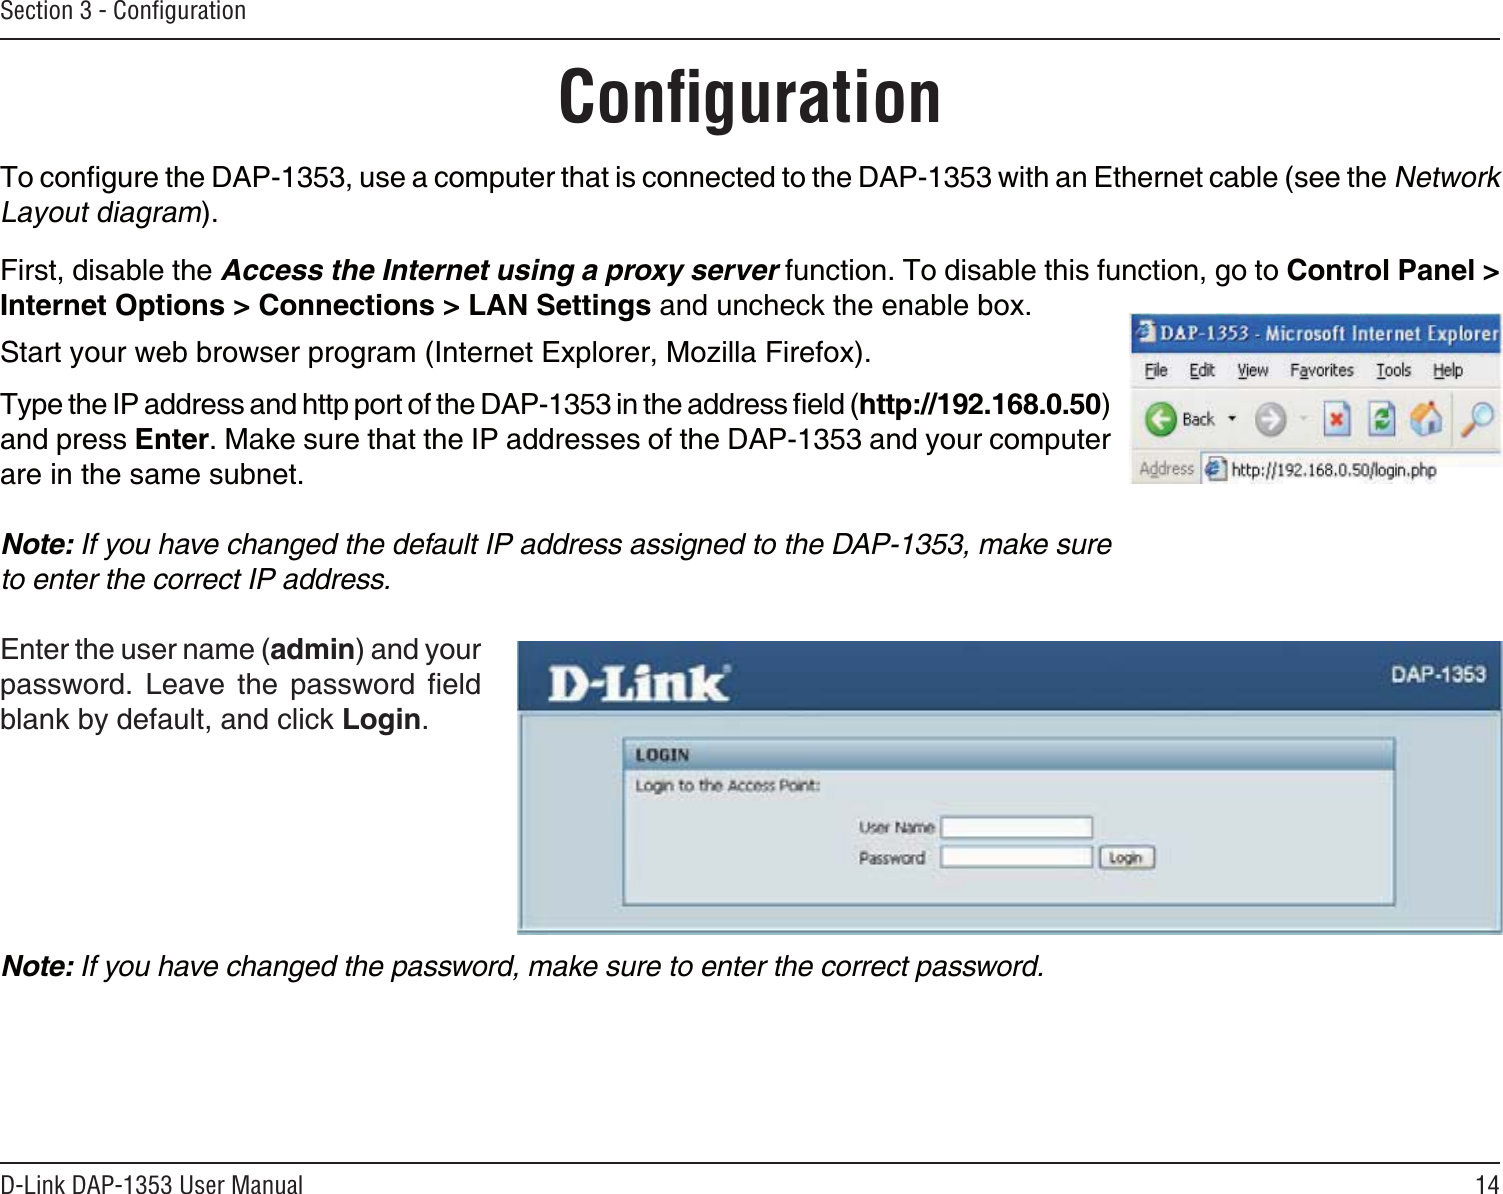 14D-Link DAP-1353 User ManualSection 3 - ConﬁgurationConﬁguration6QEQPſIWTGVJG&amp;#2WUGCEQORWVGTVJCVKUEQPPGEVGFVQVJG&amp;#2YKVJCP&apos;VJGTPGVECDNGUGGVJGNetwork Layout diagram(KTUVFKUCDNGVJGAccess the Internet using a proxy server HWPEVKQP6QFKUCDNGVJKUHWPEVKQPIQVQ Control Panel &gt; Internet Options &gt; Connections &gt; LAN SettingsCPFWPEJGEMVJGGPCDNGDQZ5VCTV[QWTYGDDTQYUGTRTQITCO+PVGTPGV&apos;ZRNQTGT/Q\KNNC(KTGHQZ6[RGVJG+2CFFTGUUCPFJVVRRQTVQHVJG&amp;#2KPVJGCFFTGUUſGNFhttp://192.168.0.50and press Enter. Make sure that the IP addresses of the DAP-1353 and your computer CTGKPVJGUCOGUWDPGVNote: If you have changed the default IP address assigned to the DAP-1353, make sure to enter the correct IP address. &apos;PVGTVJGWUGTPCOGadminCPF[QWTRCUUYQTF .GCXG VJG RCUUYQTF ſGNFDNCPMD[FGHCWNVCPFENKEMLogin.Note: If you have changed the password, make sure to enter the correct password.